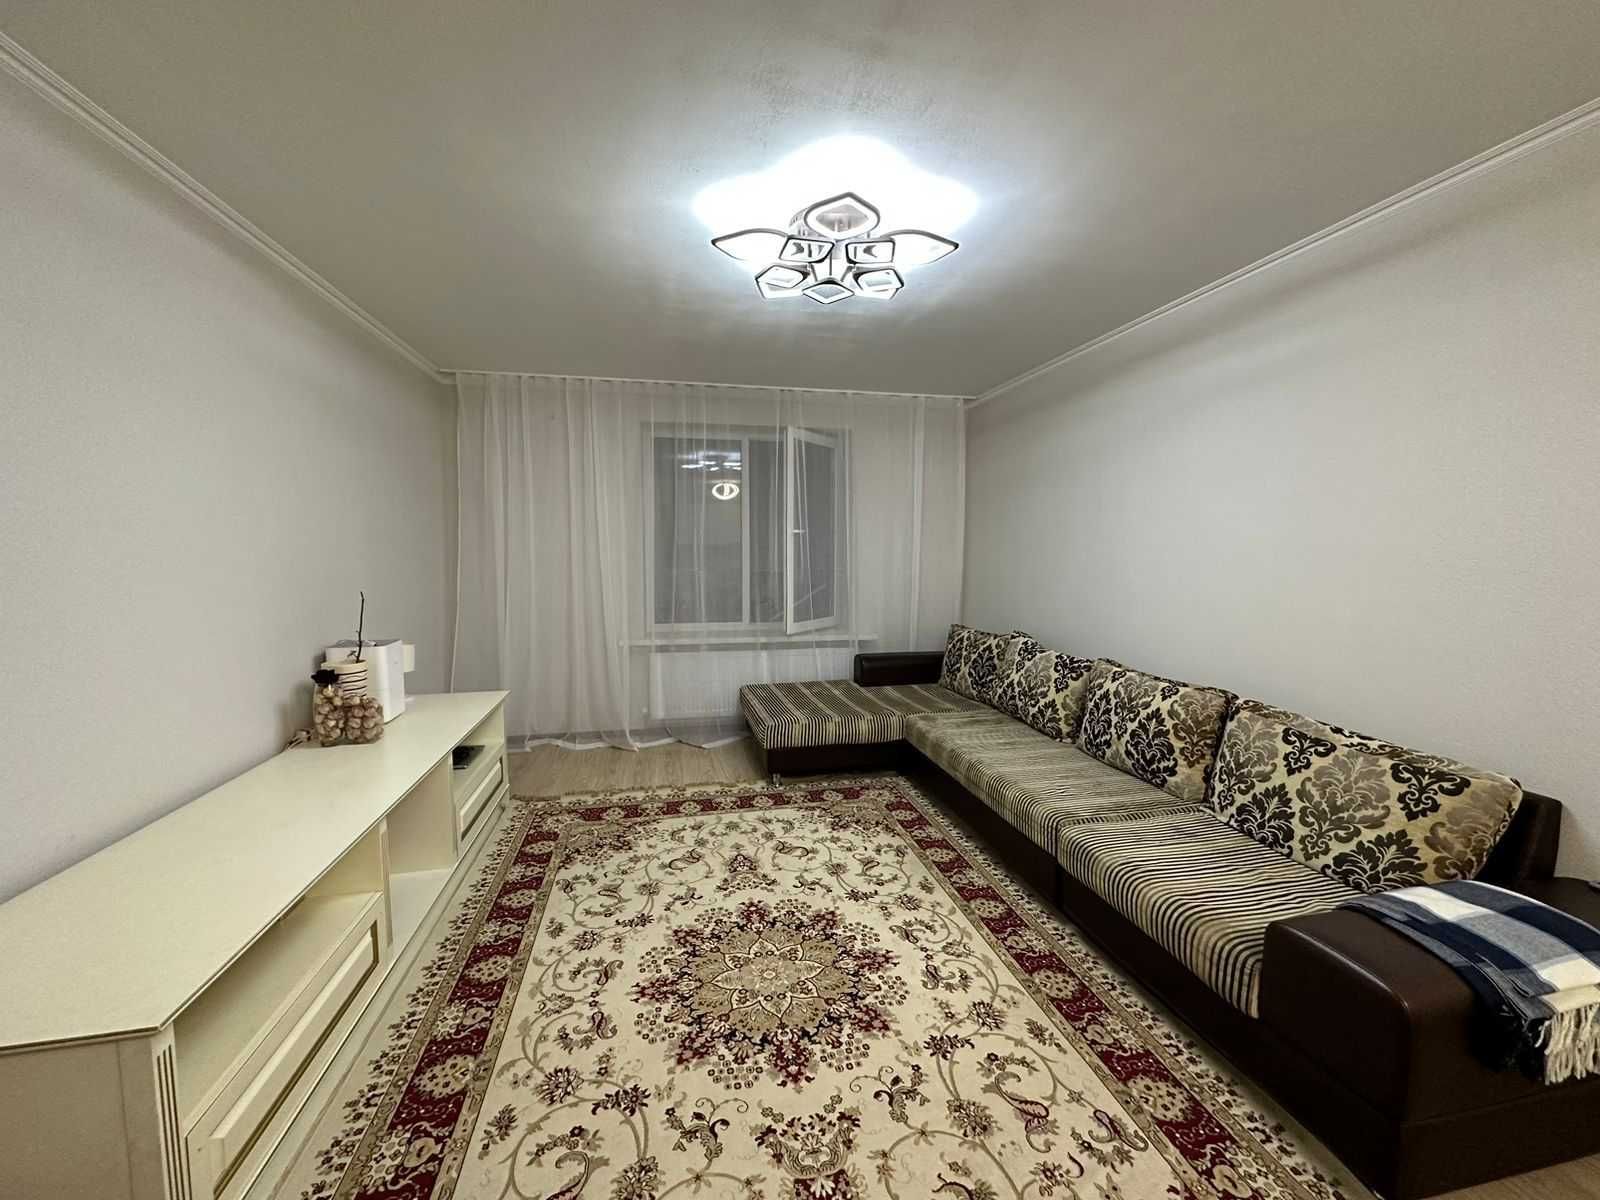 2 комнатная квартира в ЖК "Алтын Булак" 1 обмен на Астану